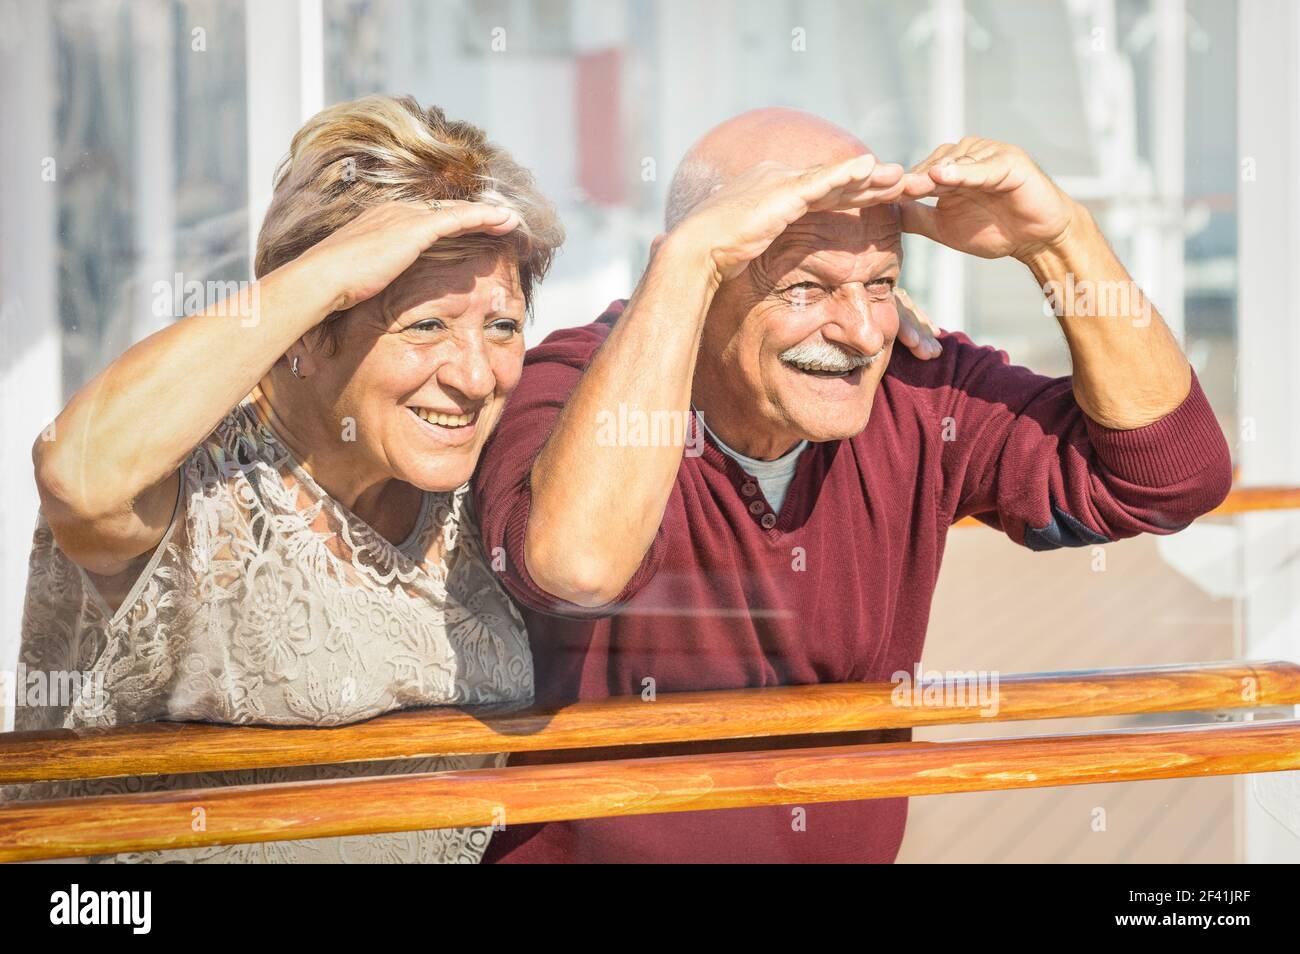 Glückliches Senior-Paar mit Spaß Blick in die Zukunft - Konzept Von aktiven spielerischen älteren Menschen im Ruhestand - Reise-Lifestyle mit Kindliche lustige Einstellung Stockfoto